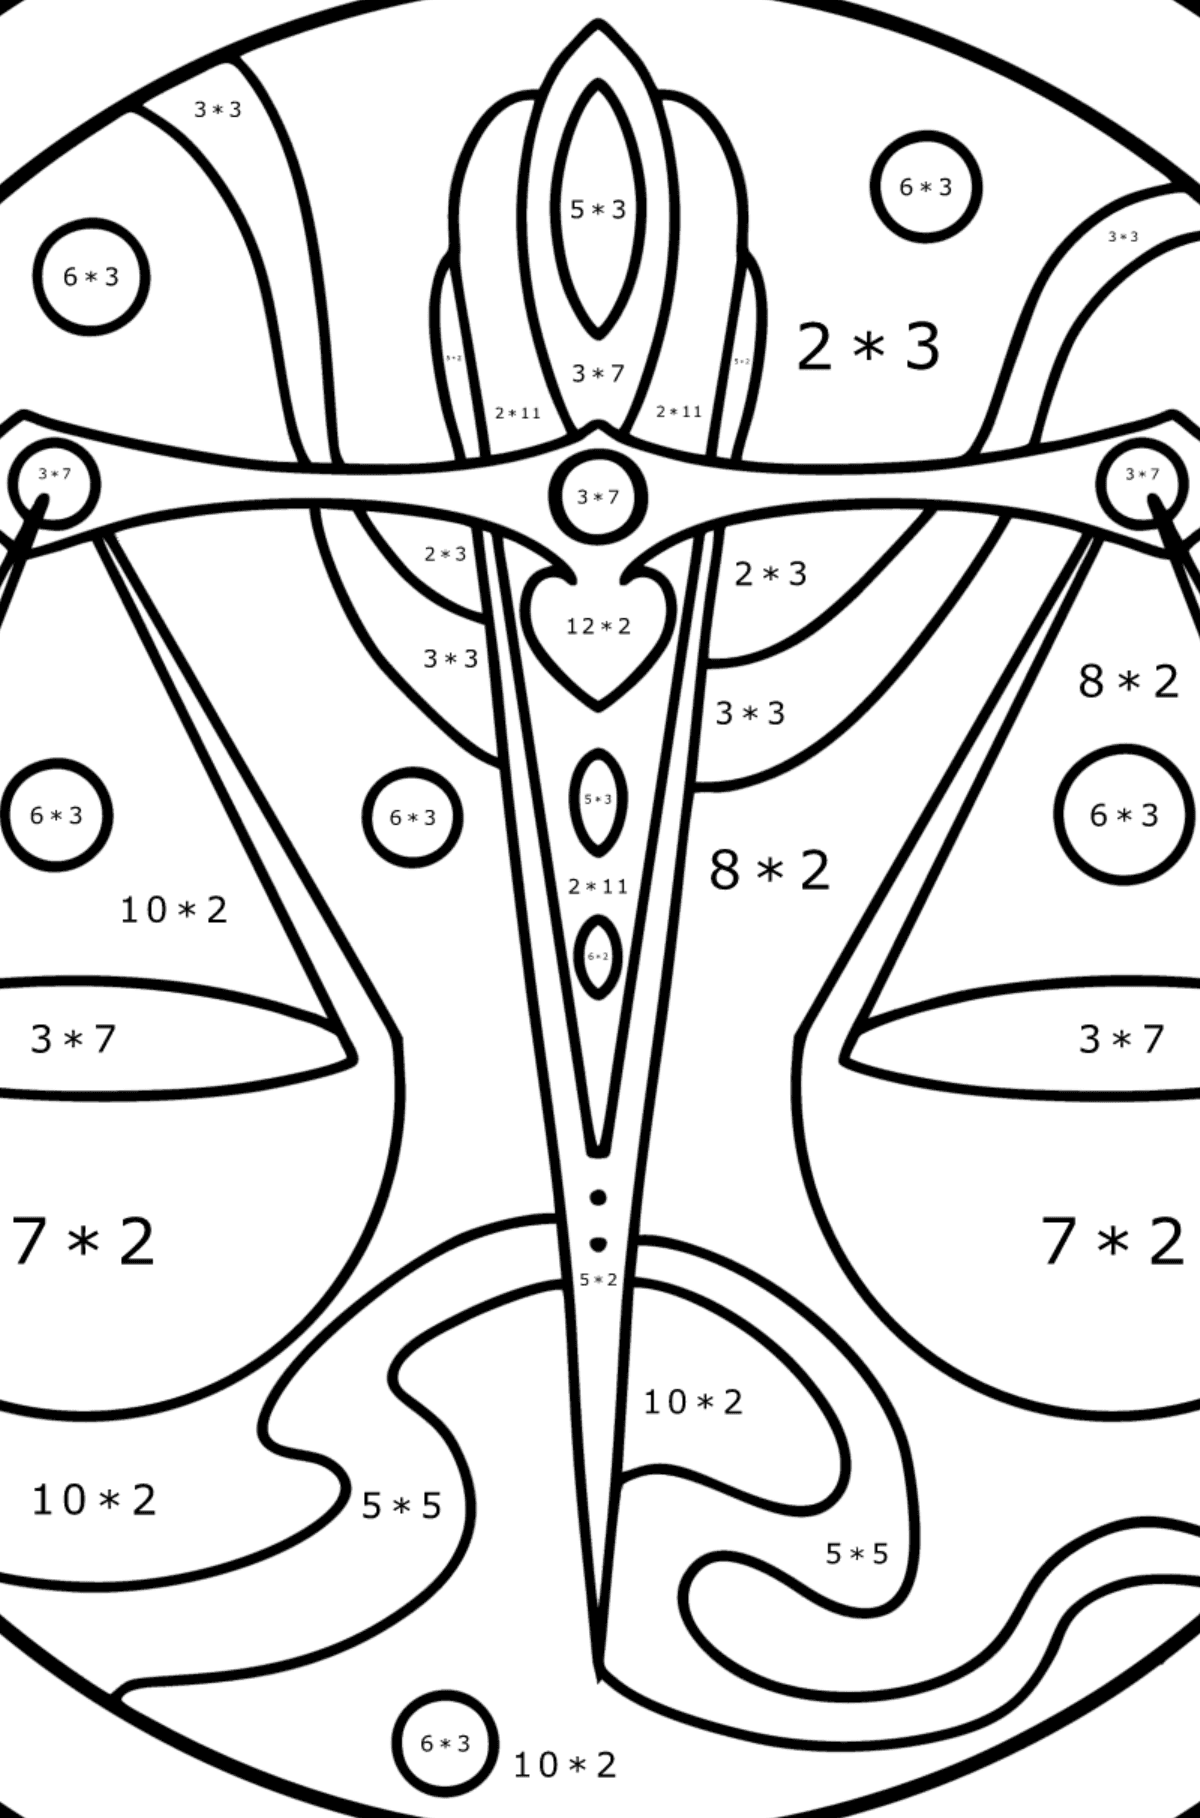 Ausmalbild für Kinder - Sternzeichen Waage - Mathe Ausmalbilder - Multiplikation für Kinder